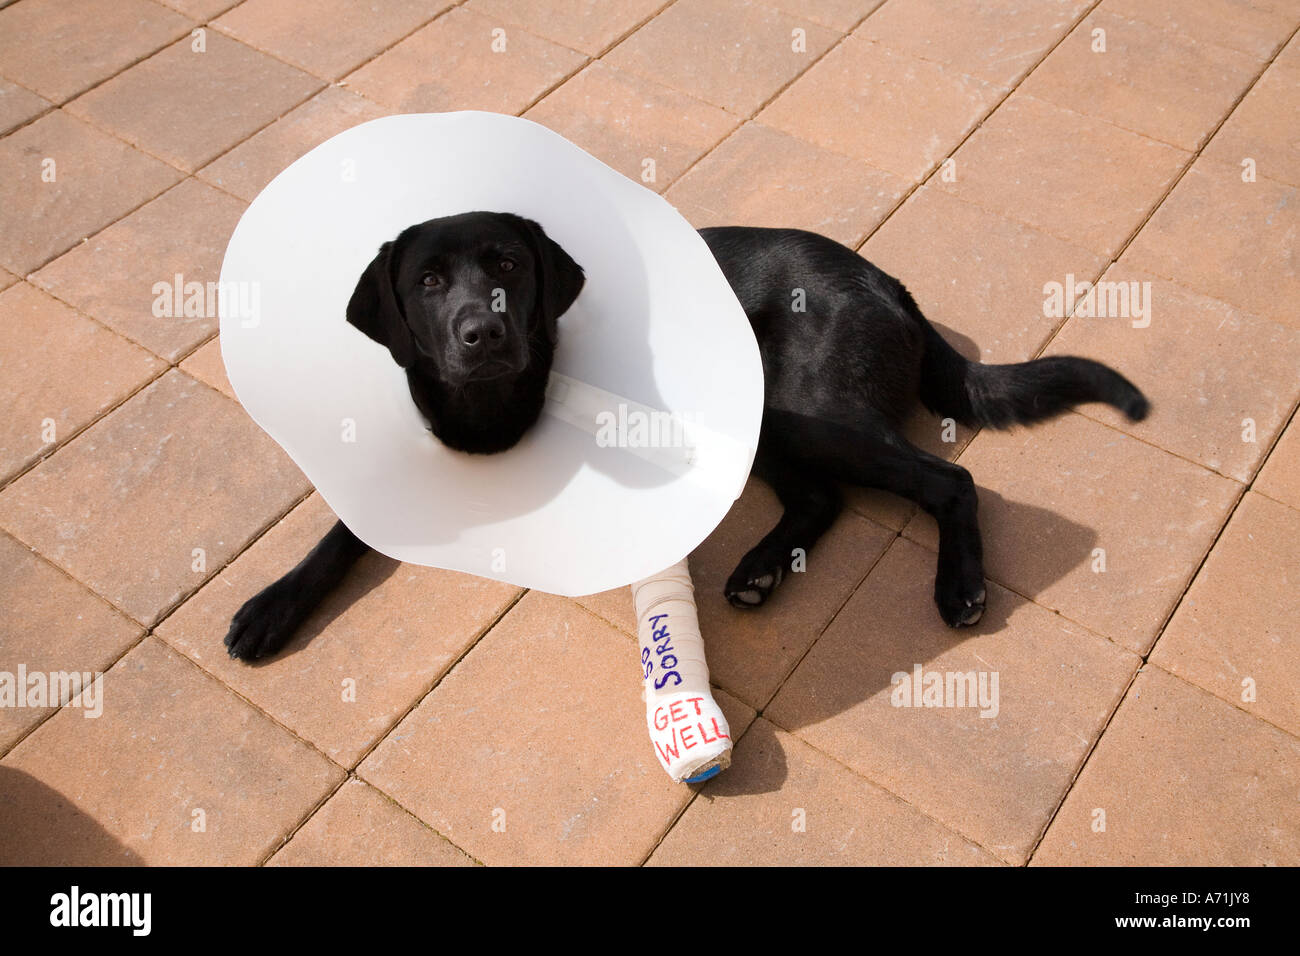 Hund mit gebrochenem Bein in Gips Stockfotografie - Alamy